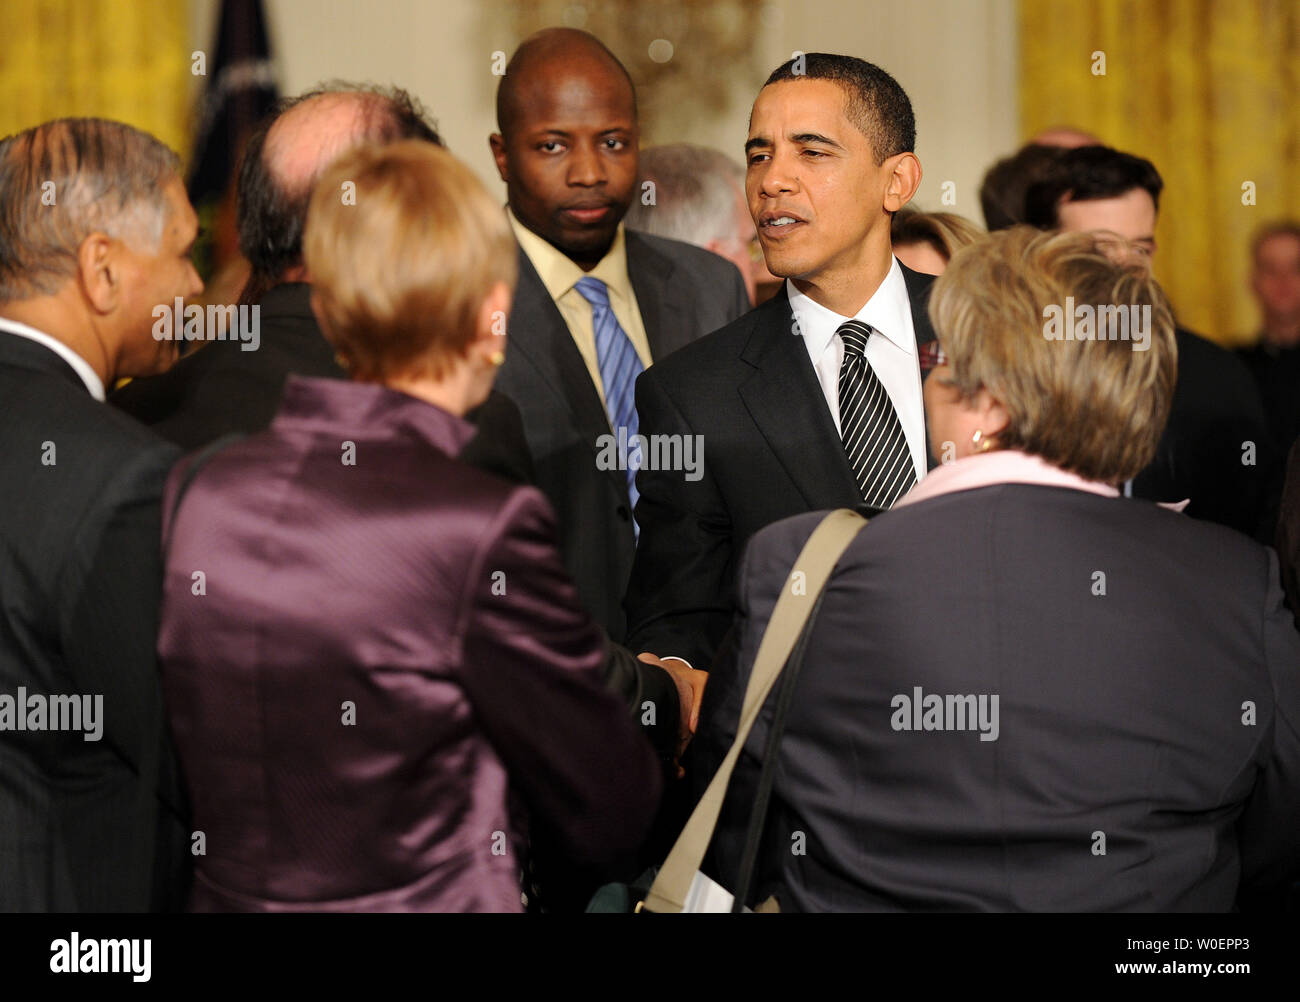 Präsident Barack Obama grüßt Gast bei der Abschlussfeier des Weißen Hauses Forum zur Reform des Gesundheitswesens, im Osten Zimmer im Weißen Haus in Washington am 5. März 2009. (UPI Foto/Kevin Dietsch) Stockfoto